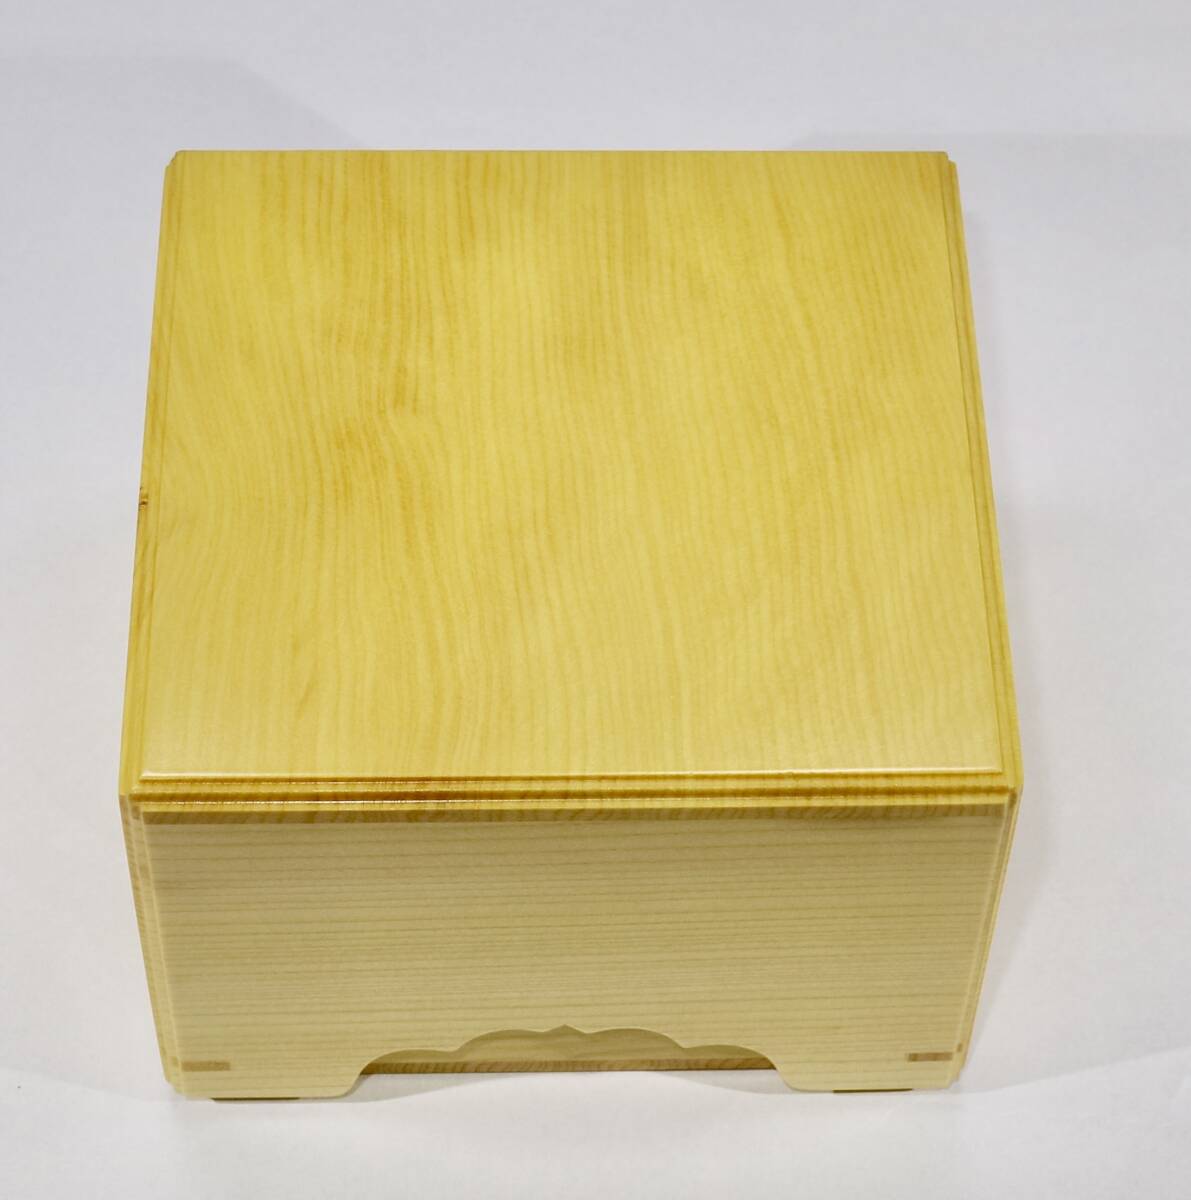 ^. дерево книга@. общий гинкго фаска shogi пешка коробка новый товар косметика с коробкой не использовался 